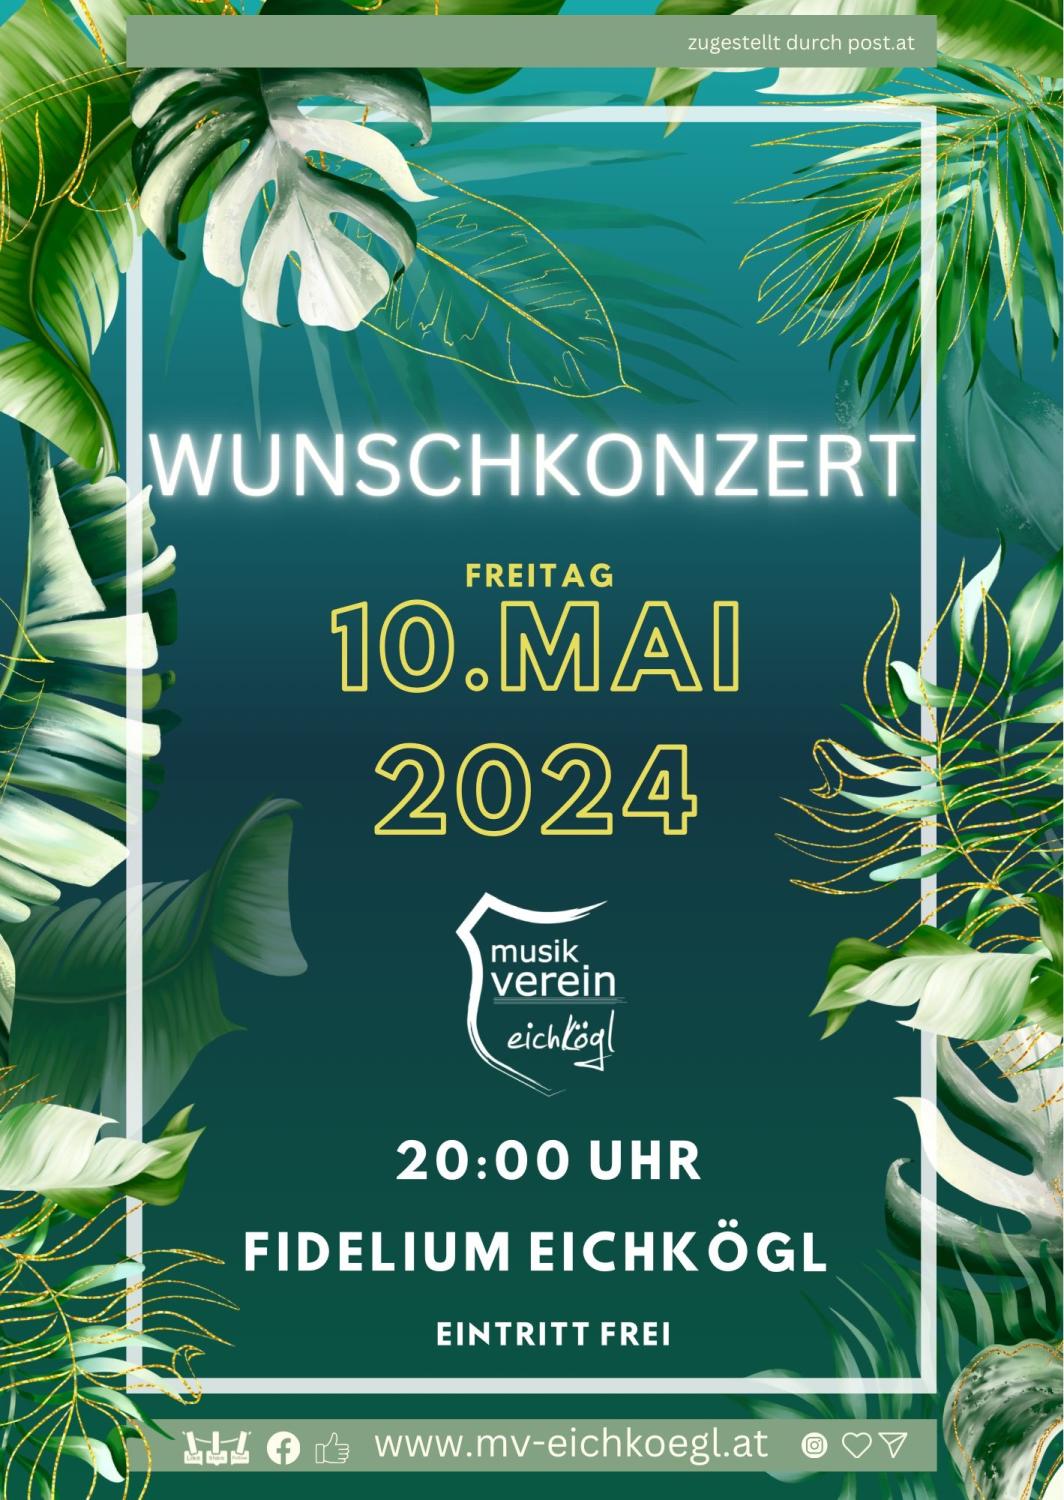 29.03.2024 Wunschkonzert 2024, Eichkögl